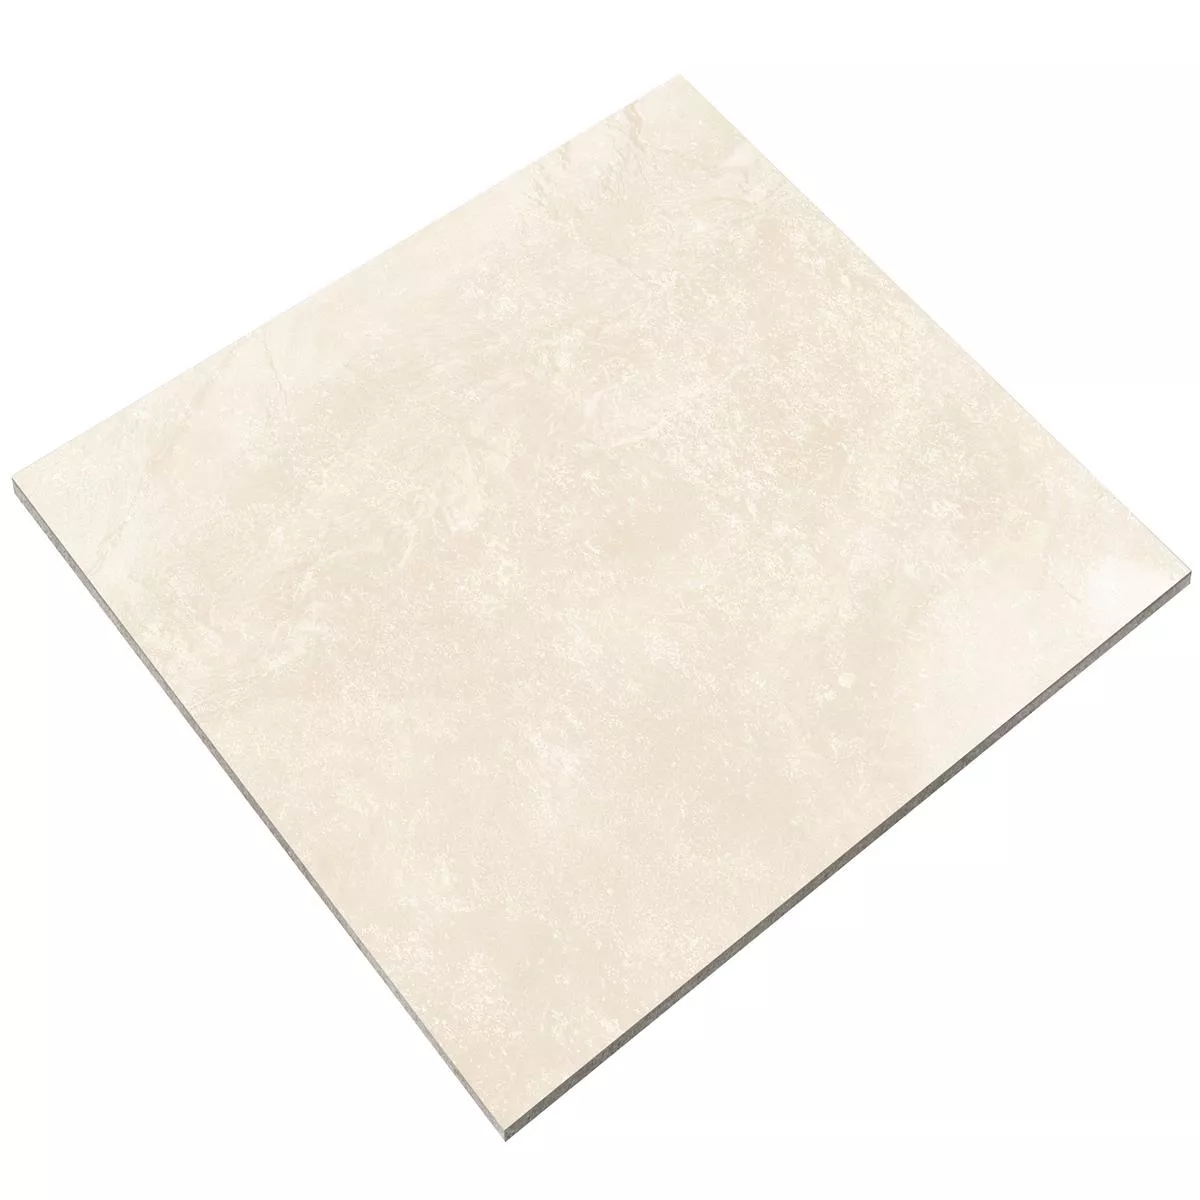 Floor Tiles Hemingway Lappato Cream 60x60cm